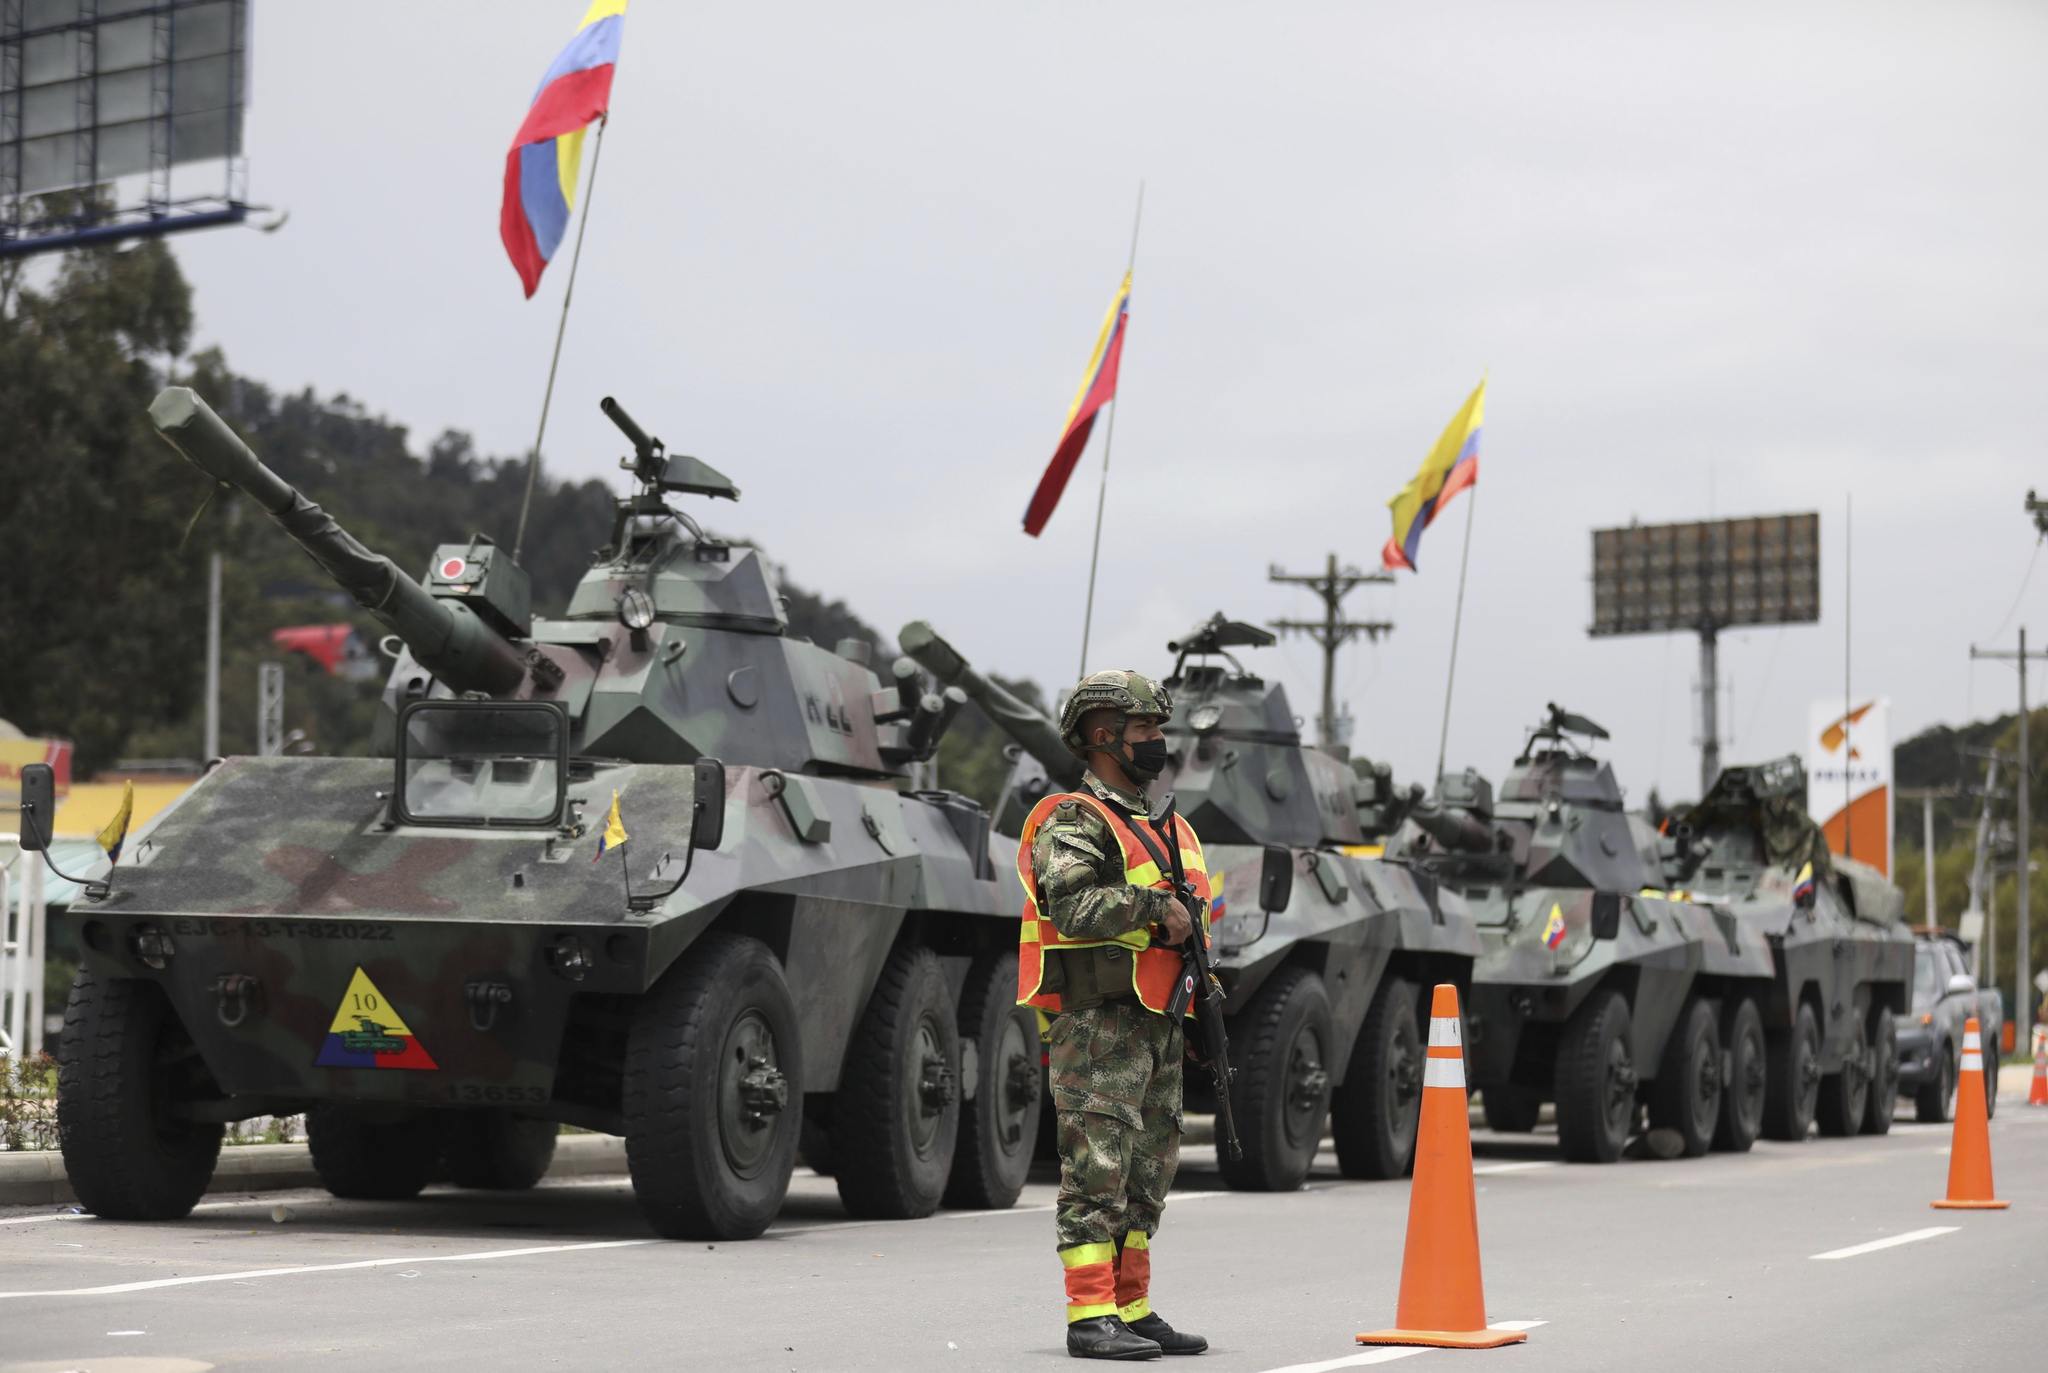 콜롬비아군 장갑차가 4일(현지시간) 수도 보고타 외곽의 도로 톨게이트를 경계하고 있다. 반정부 시위대가 수도로 진입하기 위해 톨게이트를 파괴하는 것을 막기 위한 조치다. AP=연합뉴스